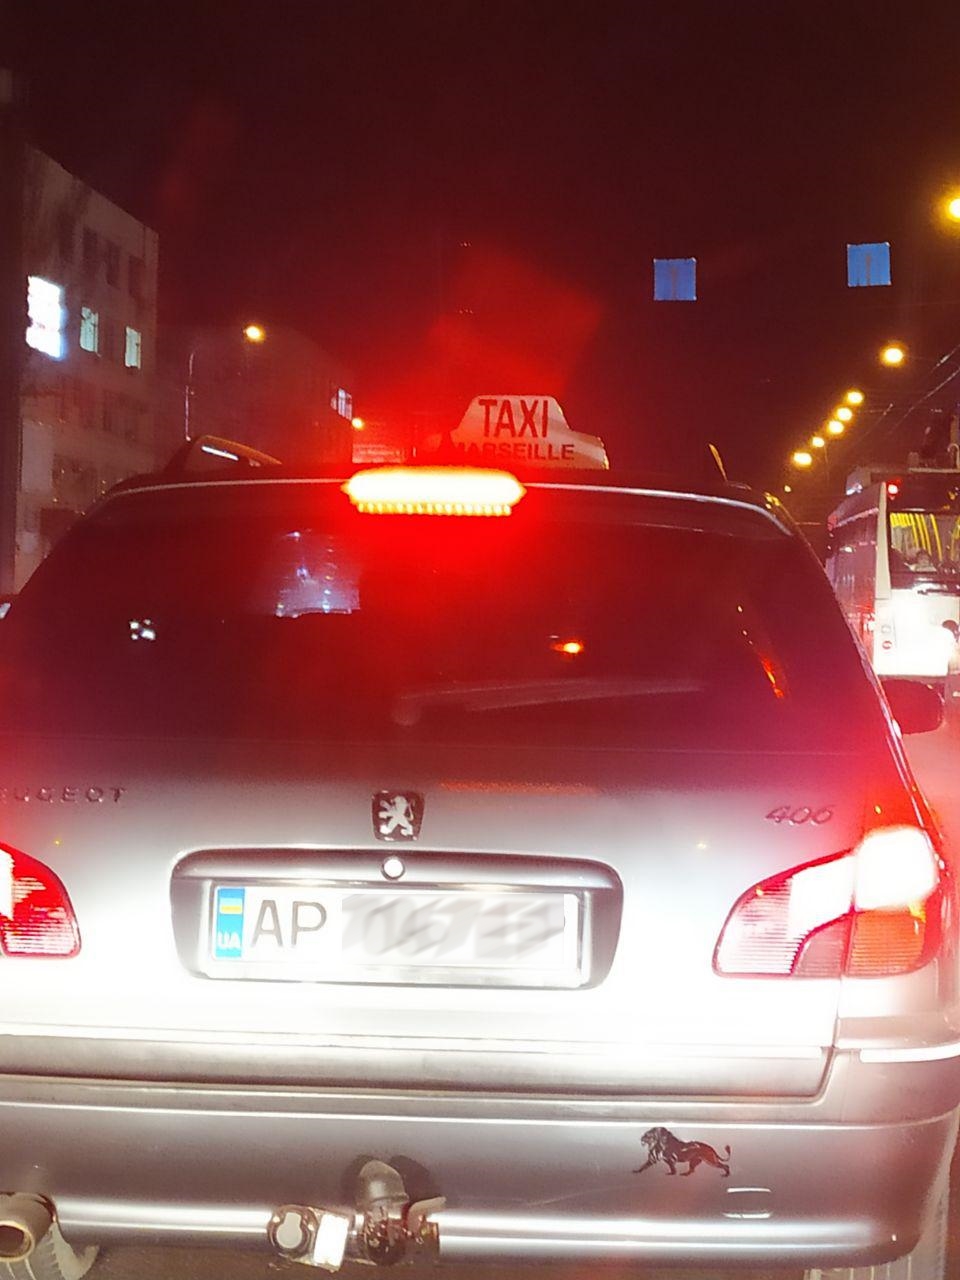 По запорожским улицам колесит такси из одноимённого французского фильма (ФОТО)